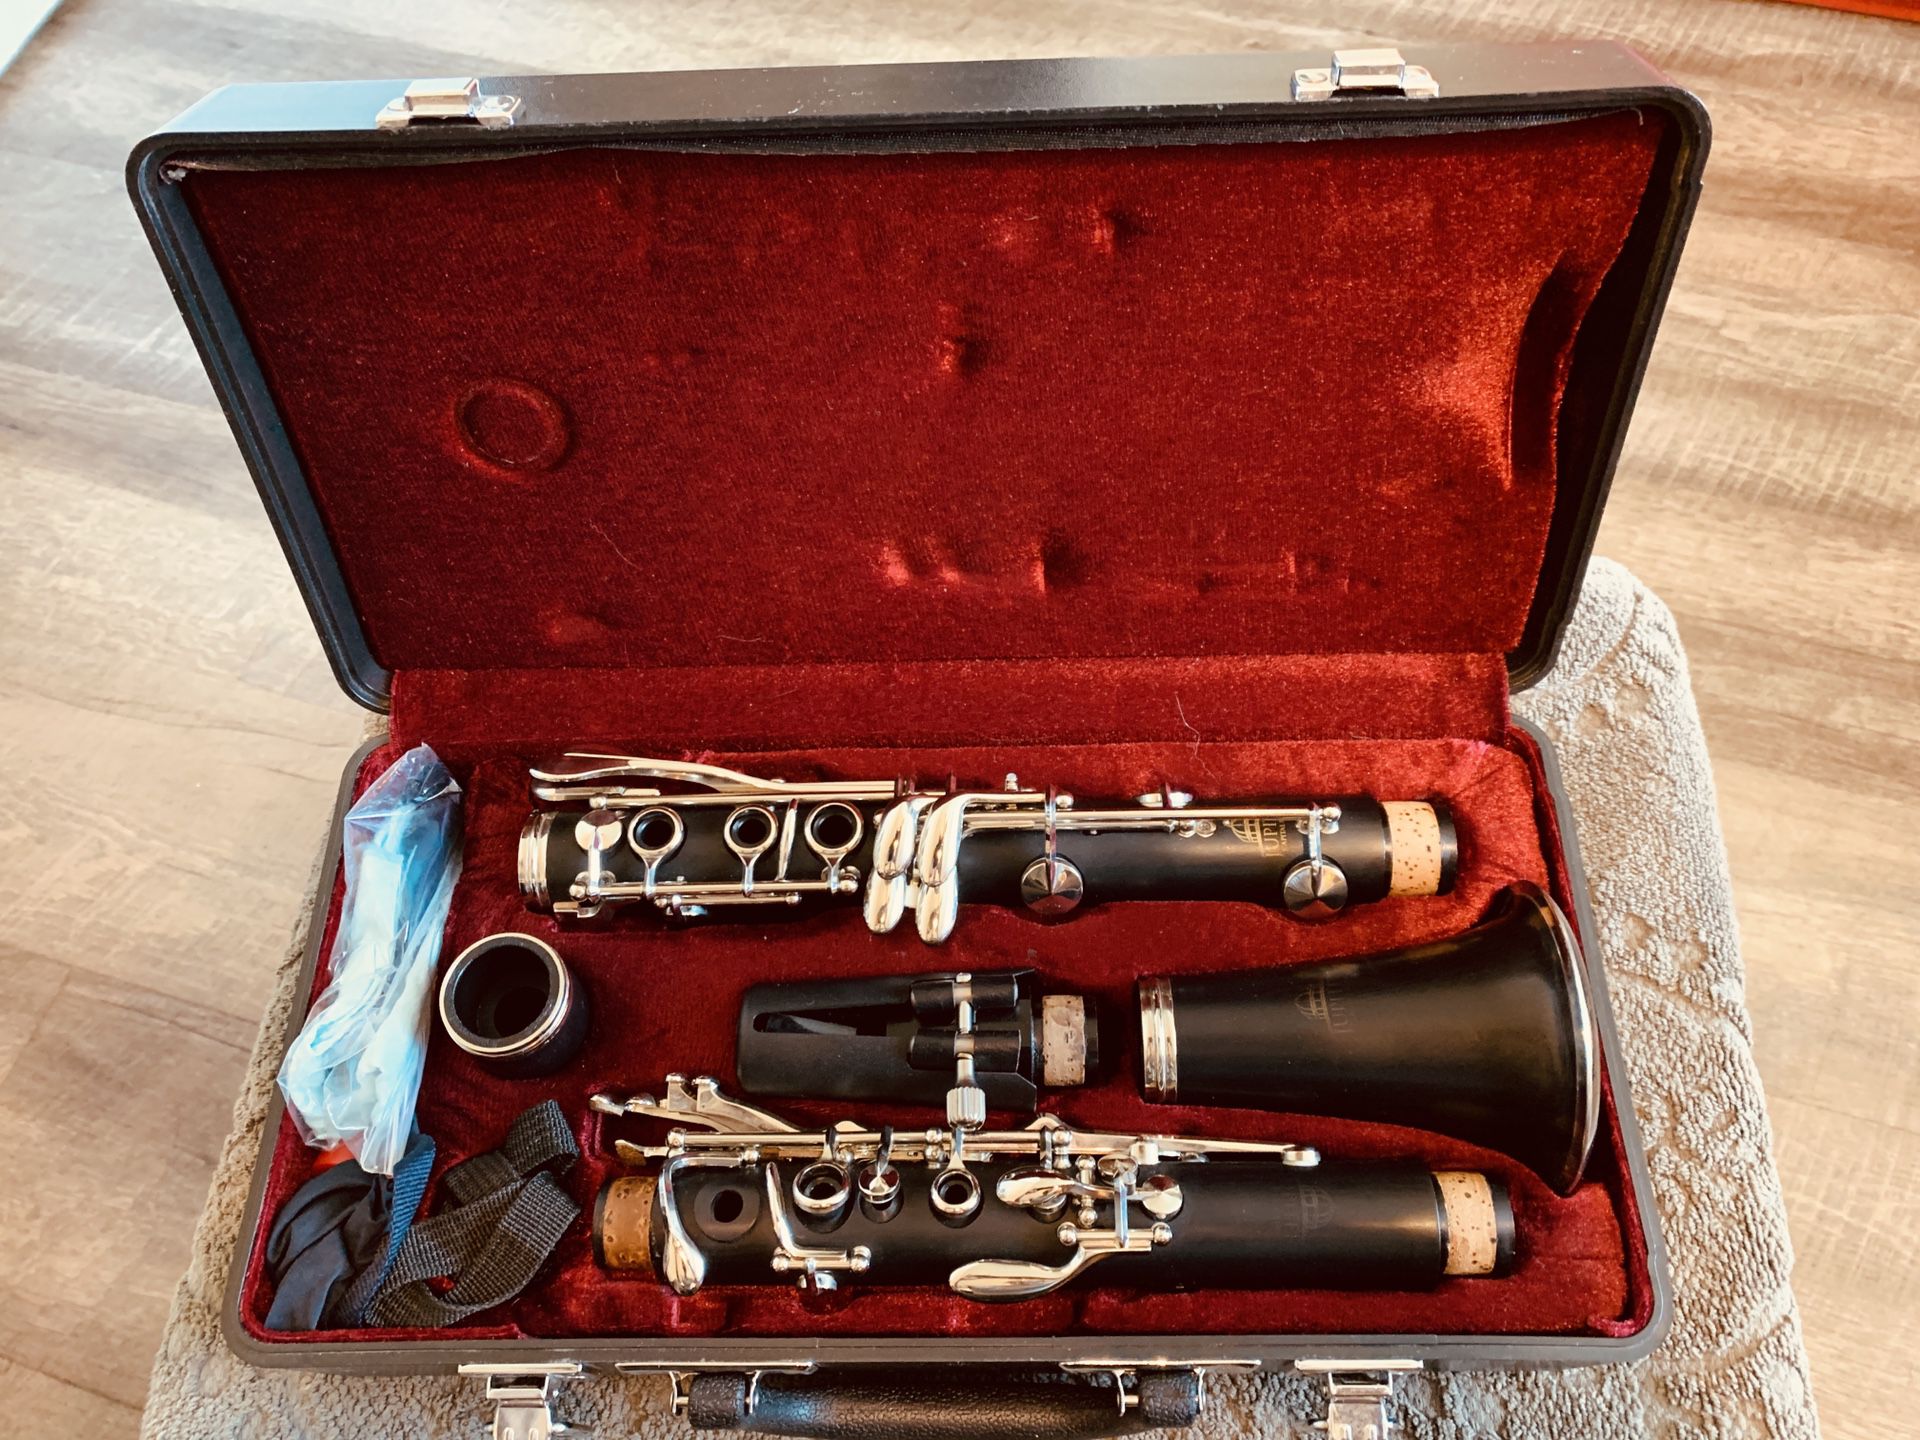 Jupiter Clarinet CEC-635 in Hardshell case 196901.